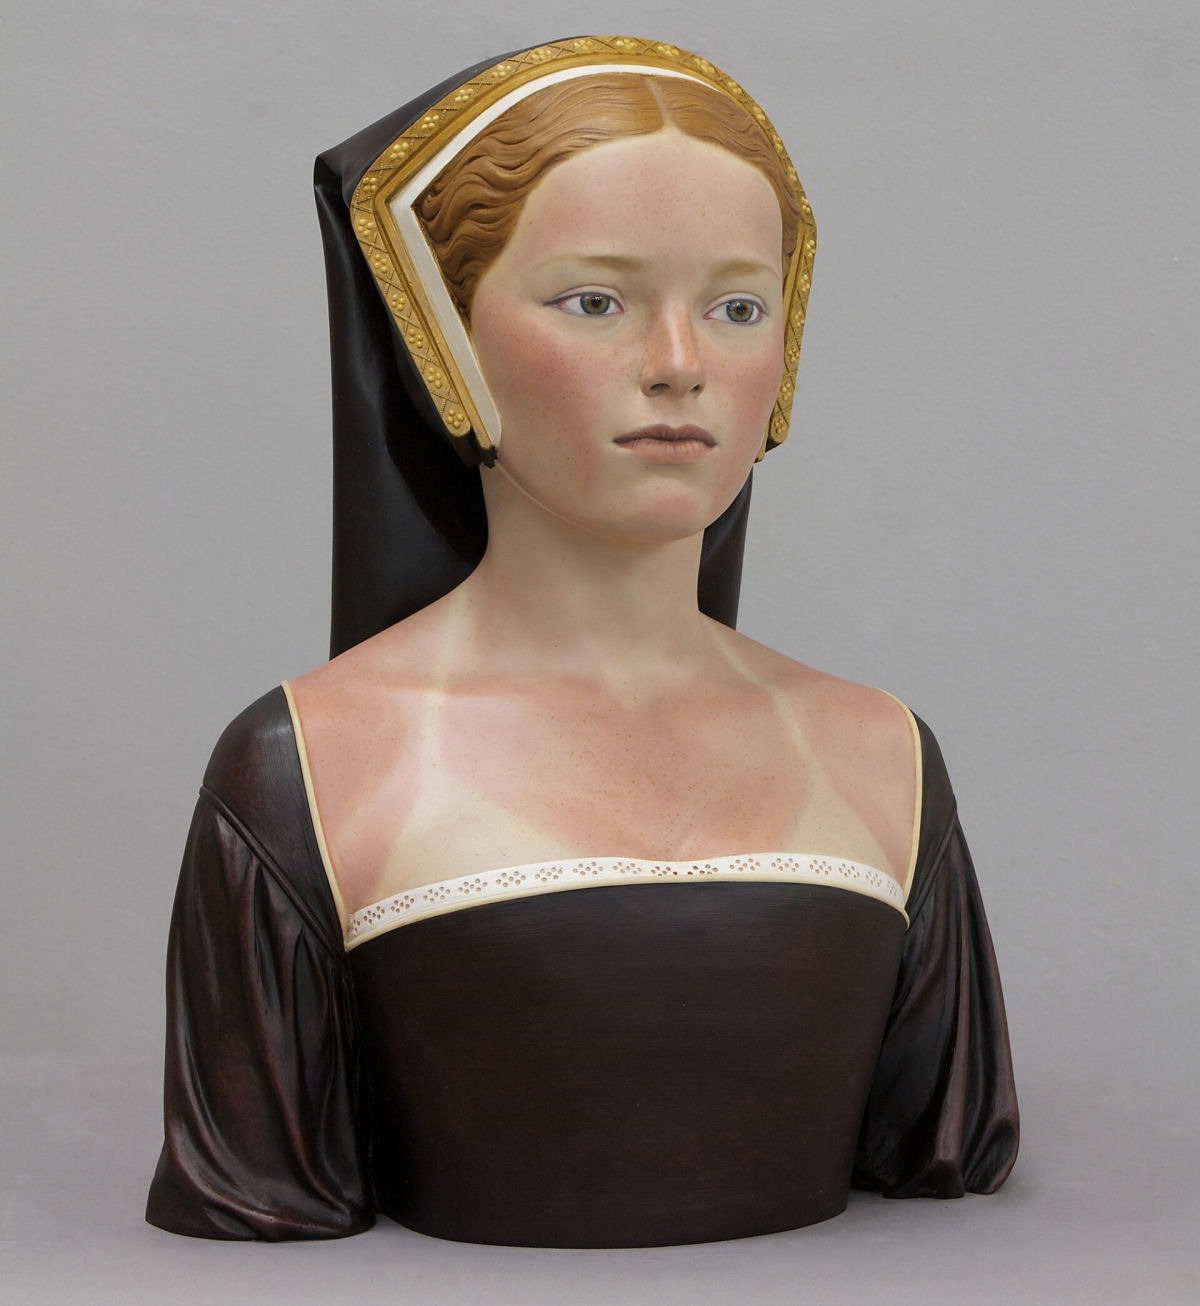 Ousados bustos femininos são esculpidos com um toque contemporâneo e atrevido por um artista espanhol 04